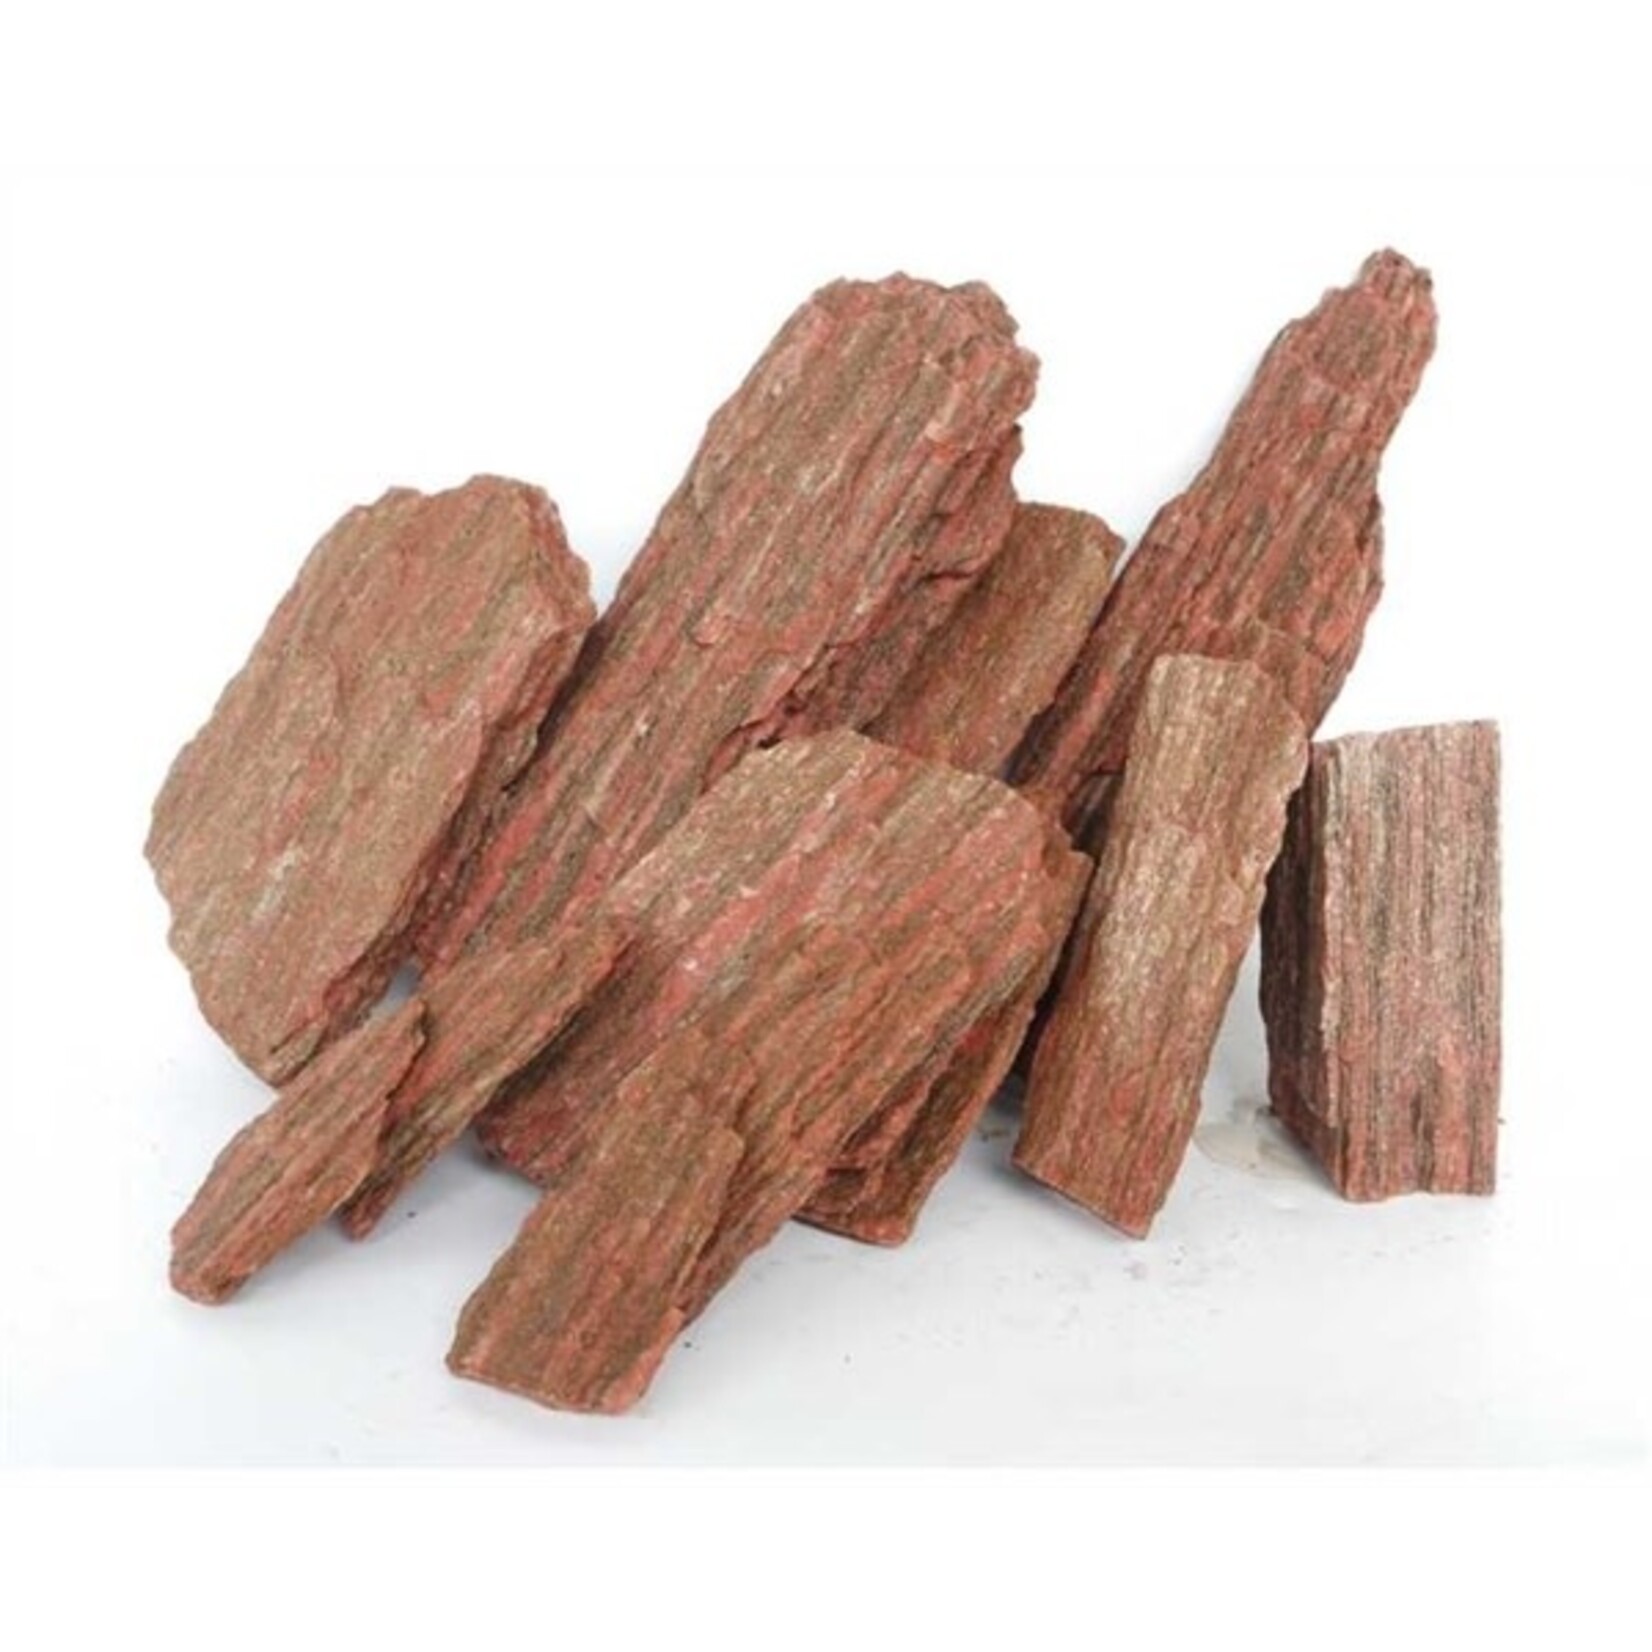 HS Aqua Wood stone s (20 st) ca. 1-1.5 kg